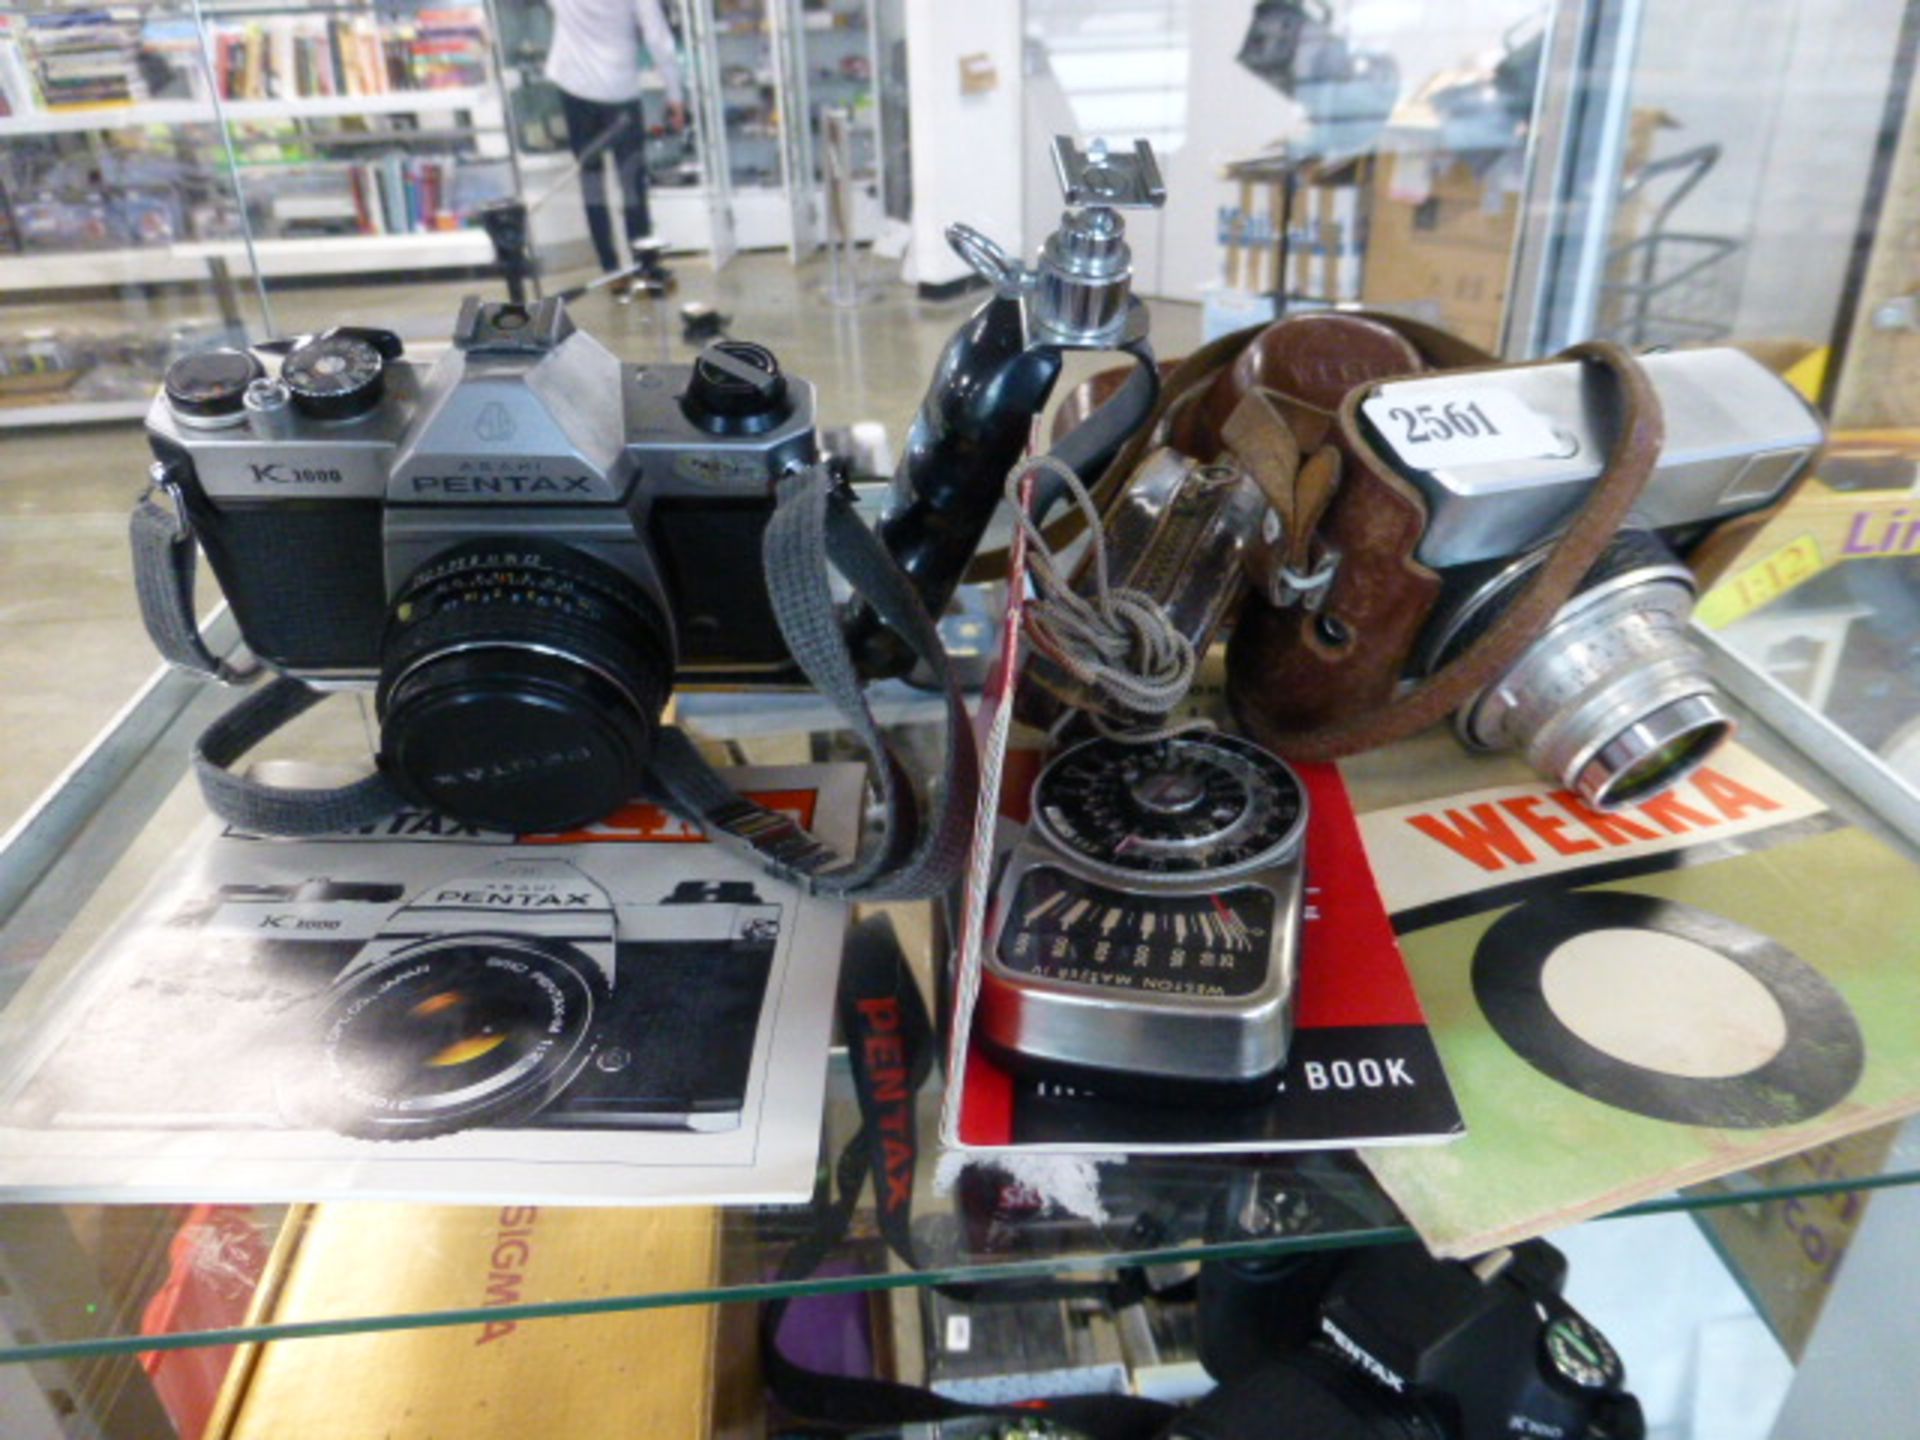 Werra camera, Weston Master 4 light meter, Pentax 1000 film camera